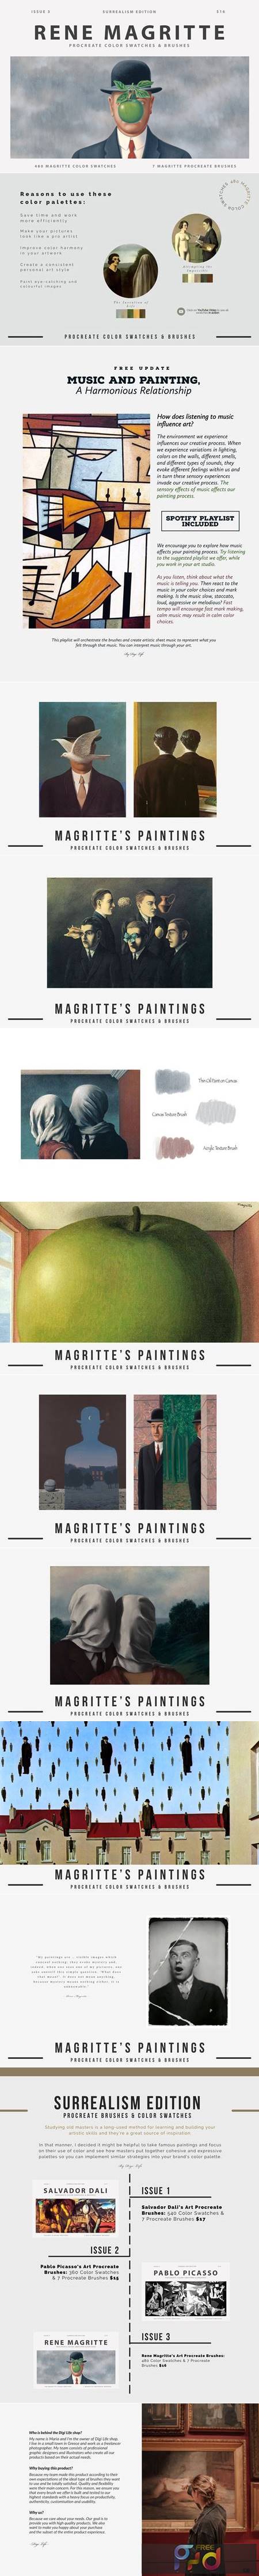 Rene Magritte Procreate Brushes